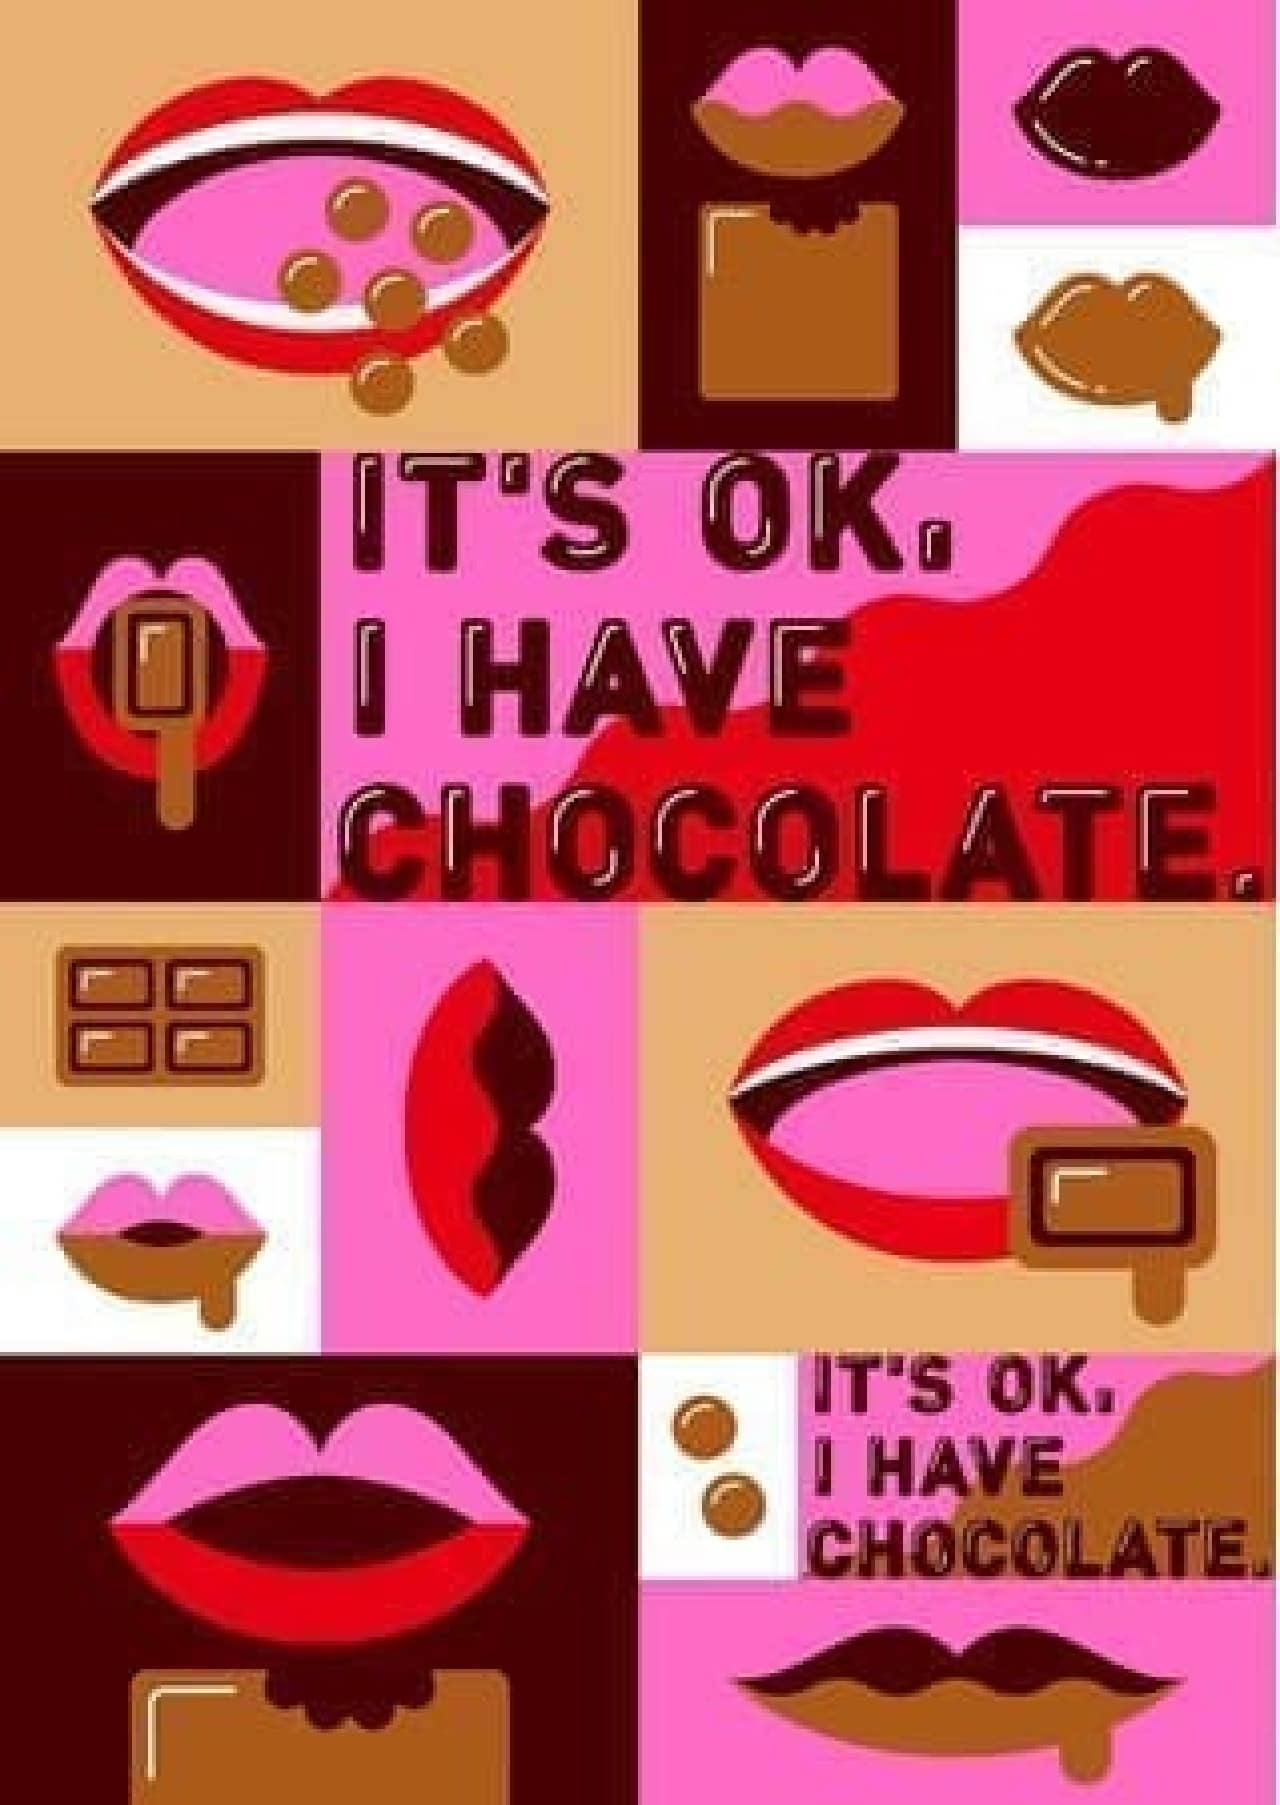 プラザバレンタインプロモーション「IT’S OK, I HAVE CHOCOLATE.」